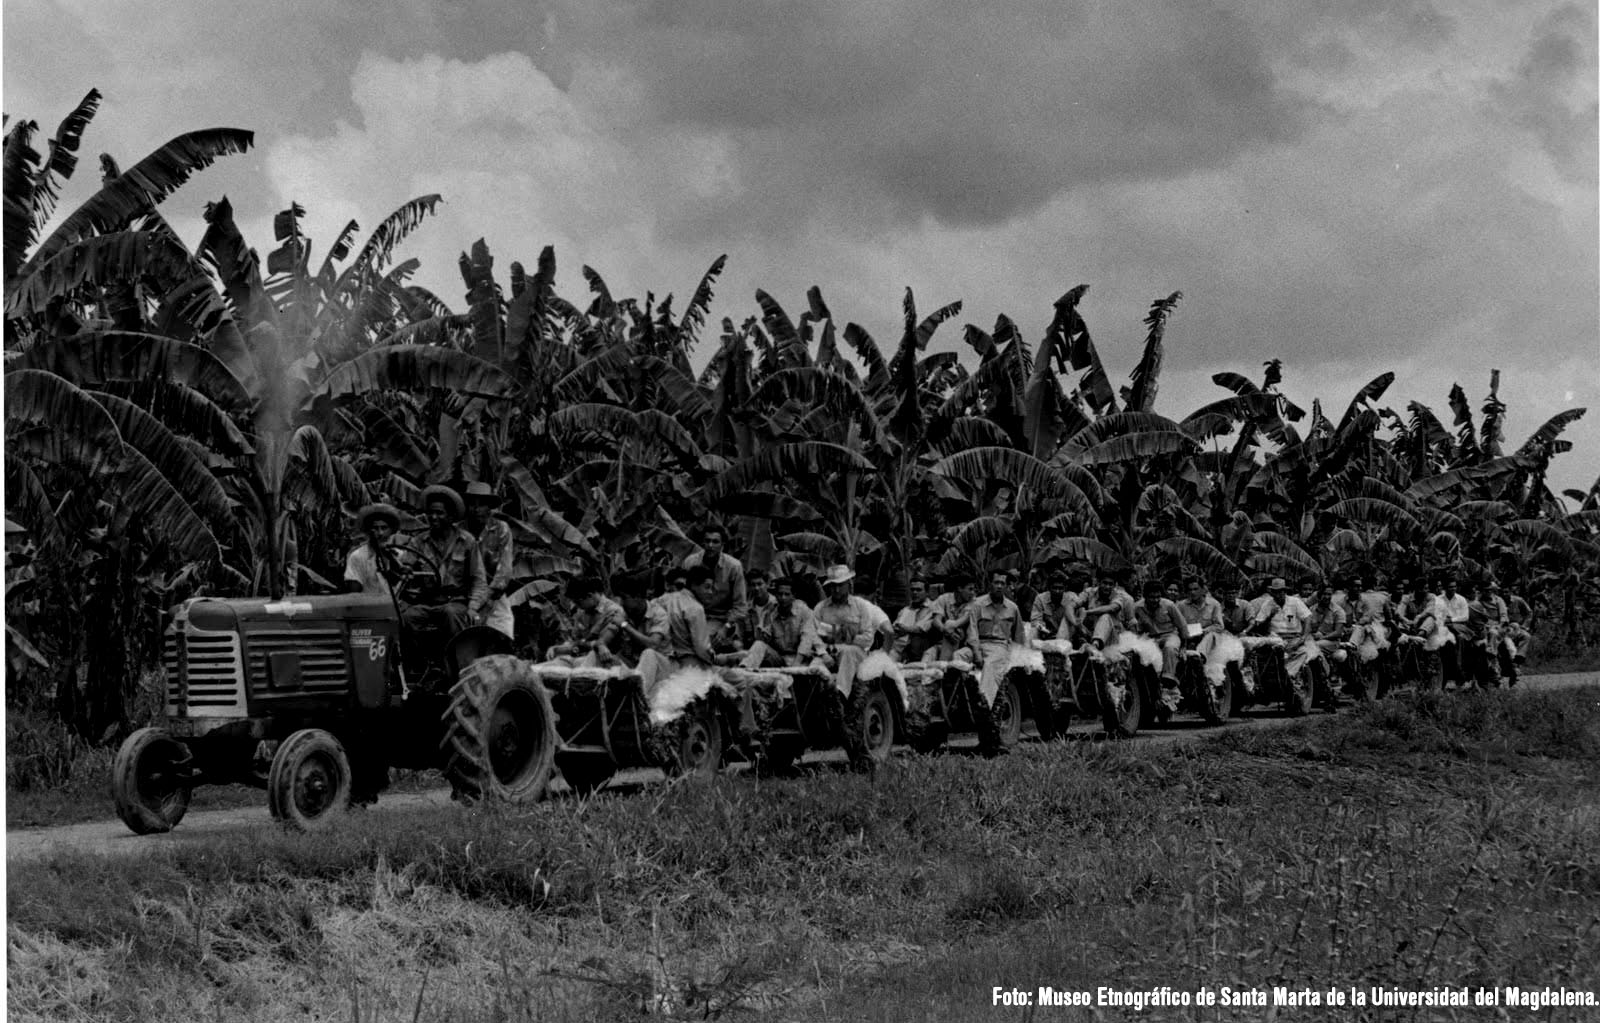 Masacre de las bananeras, a realidade da luta histórica na América Latina